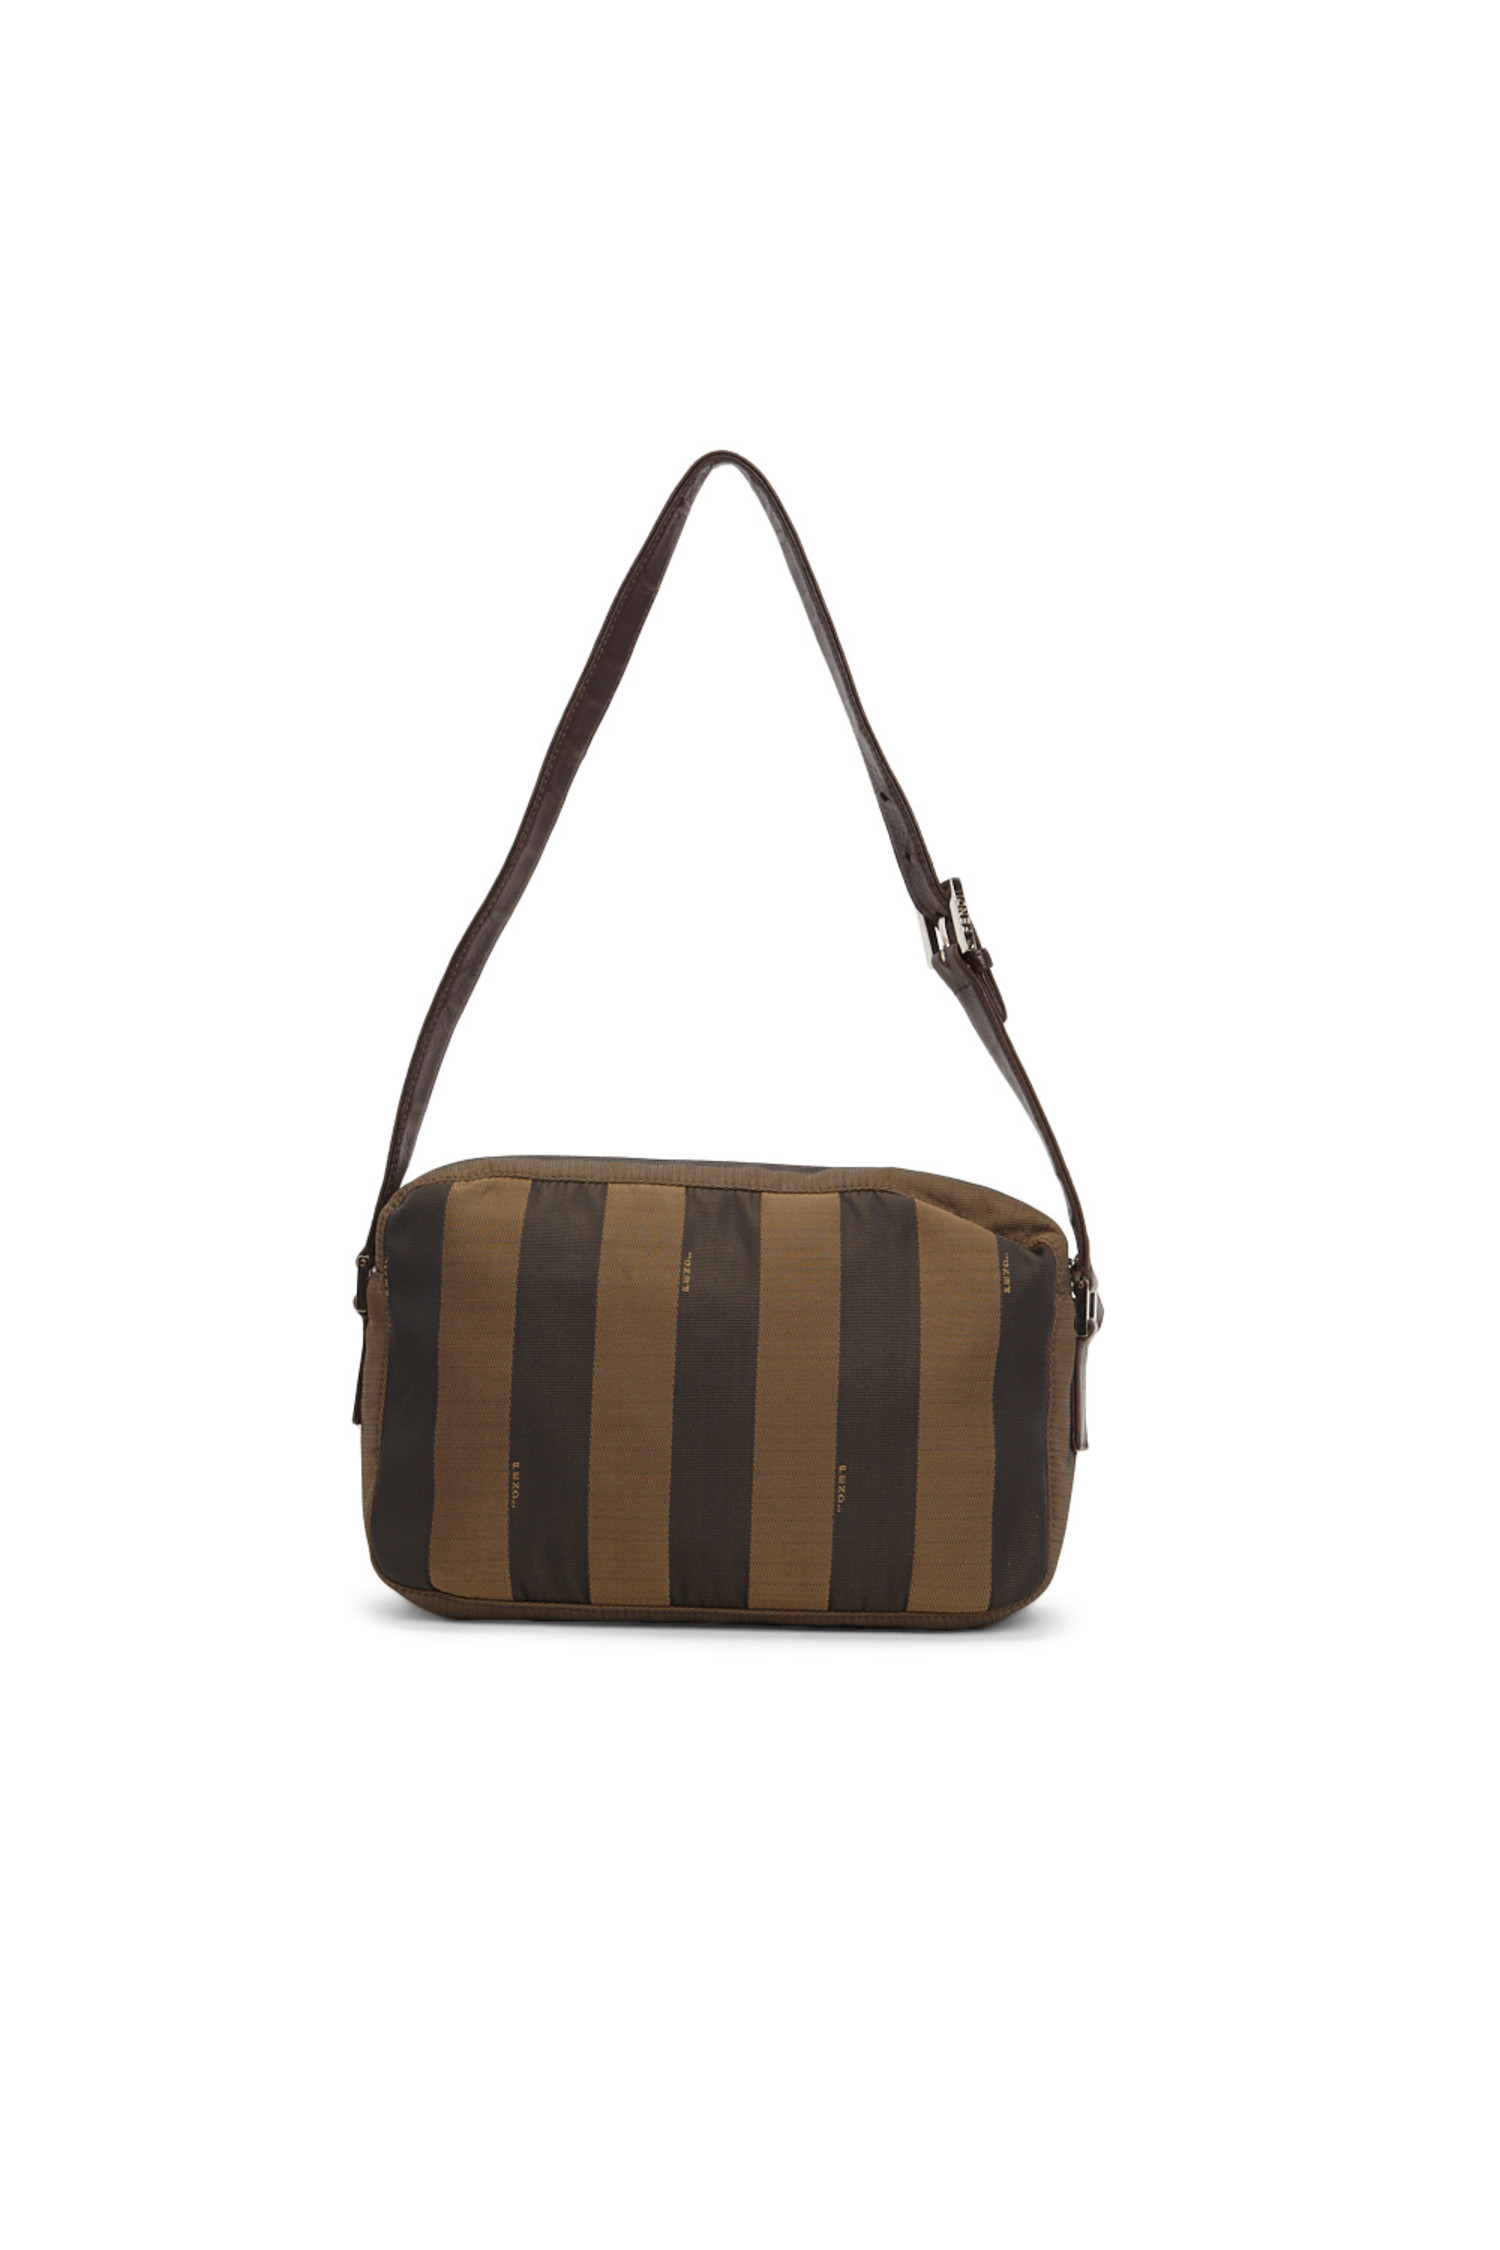 fendi striped bag vintage